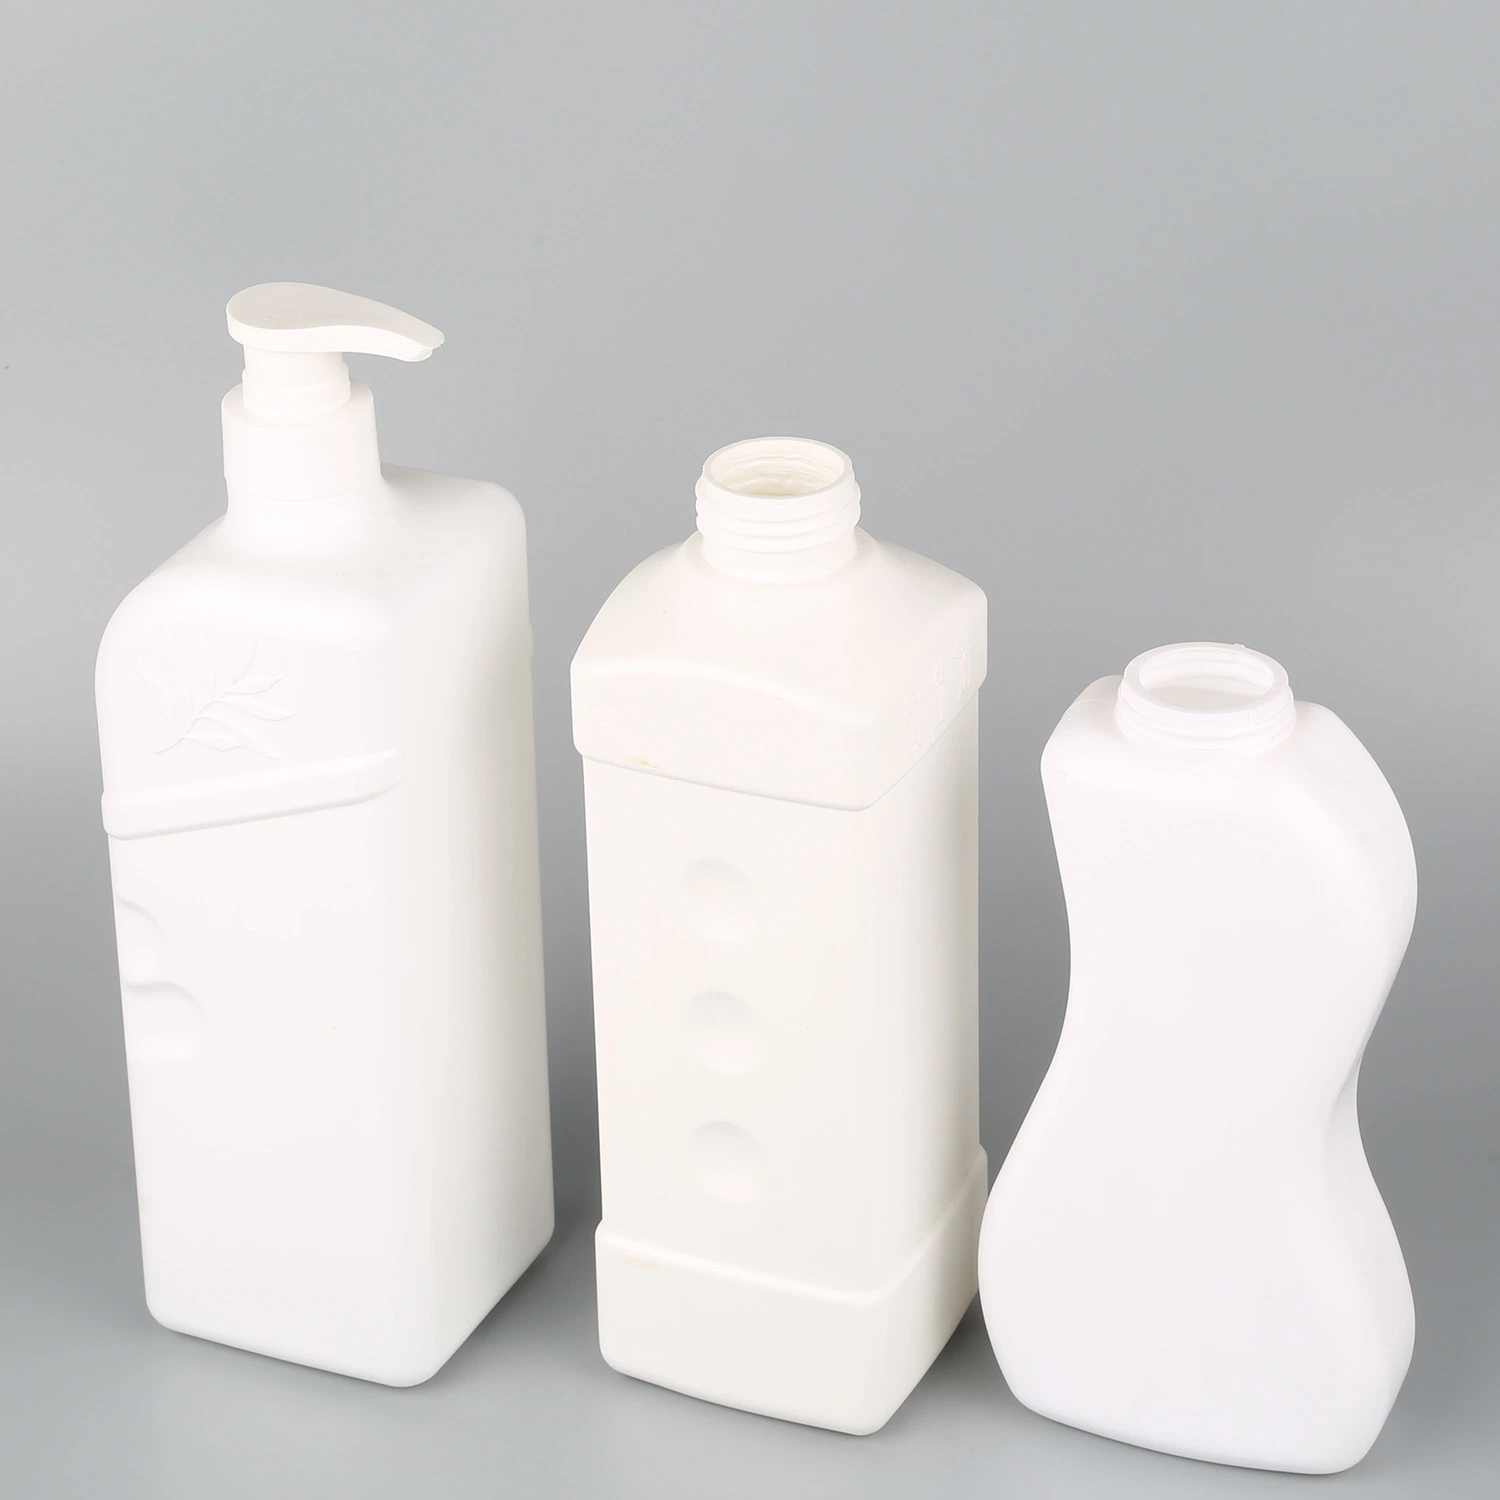 ПЭТ-бутылки с косметической продукцией/продуктами для ухода за кожей